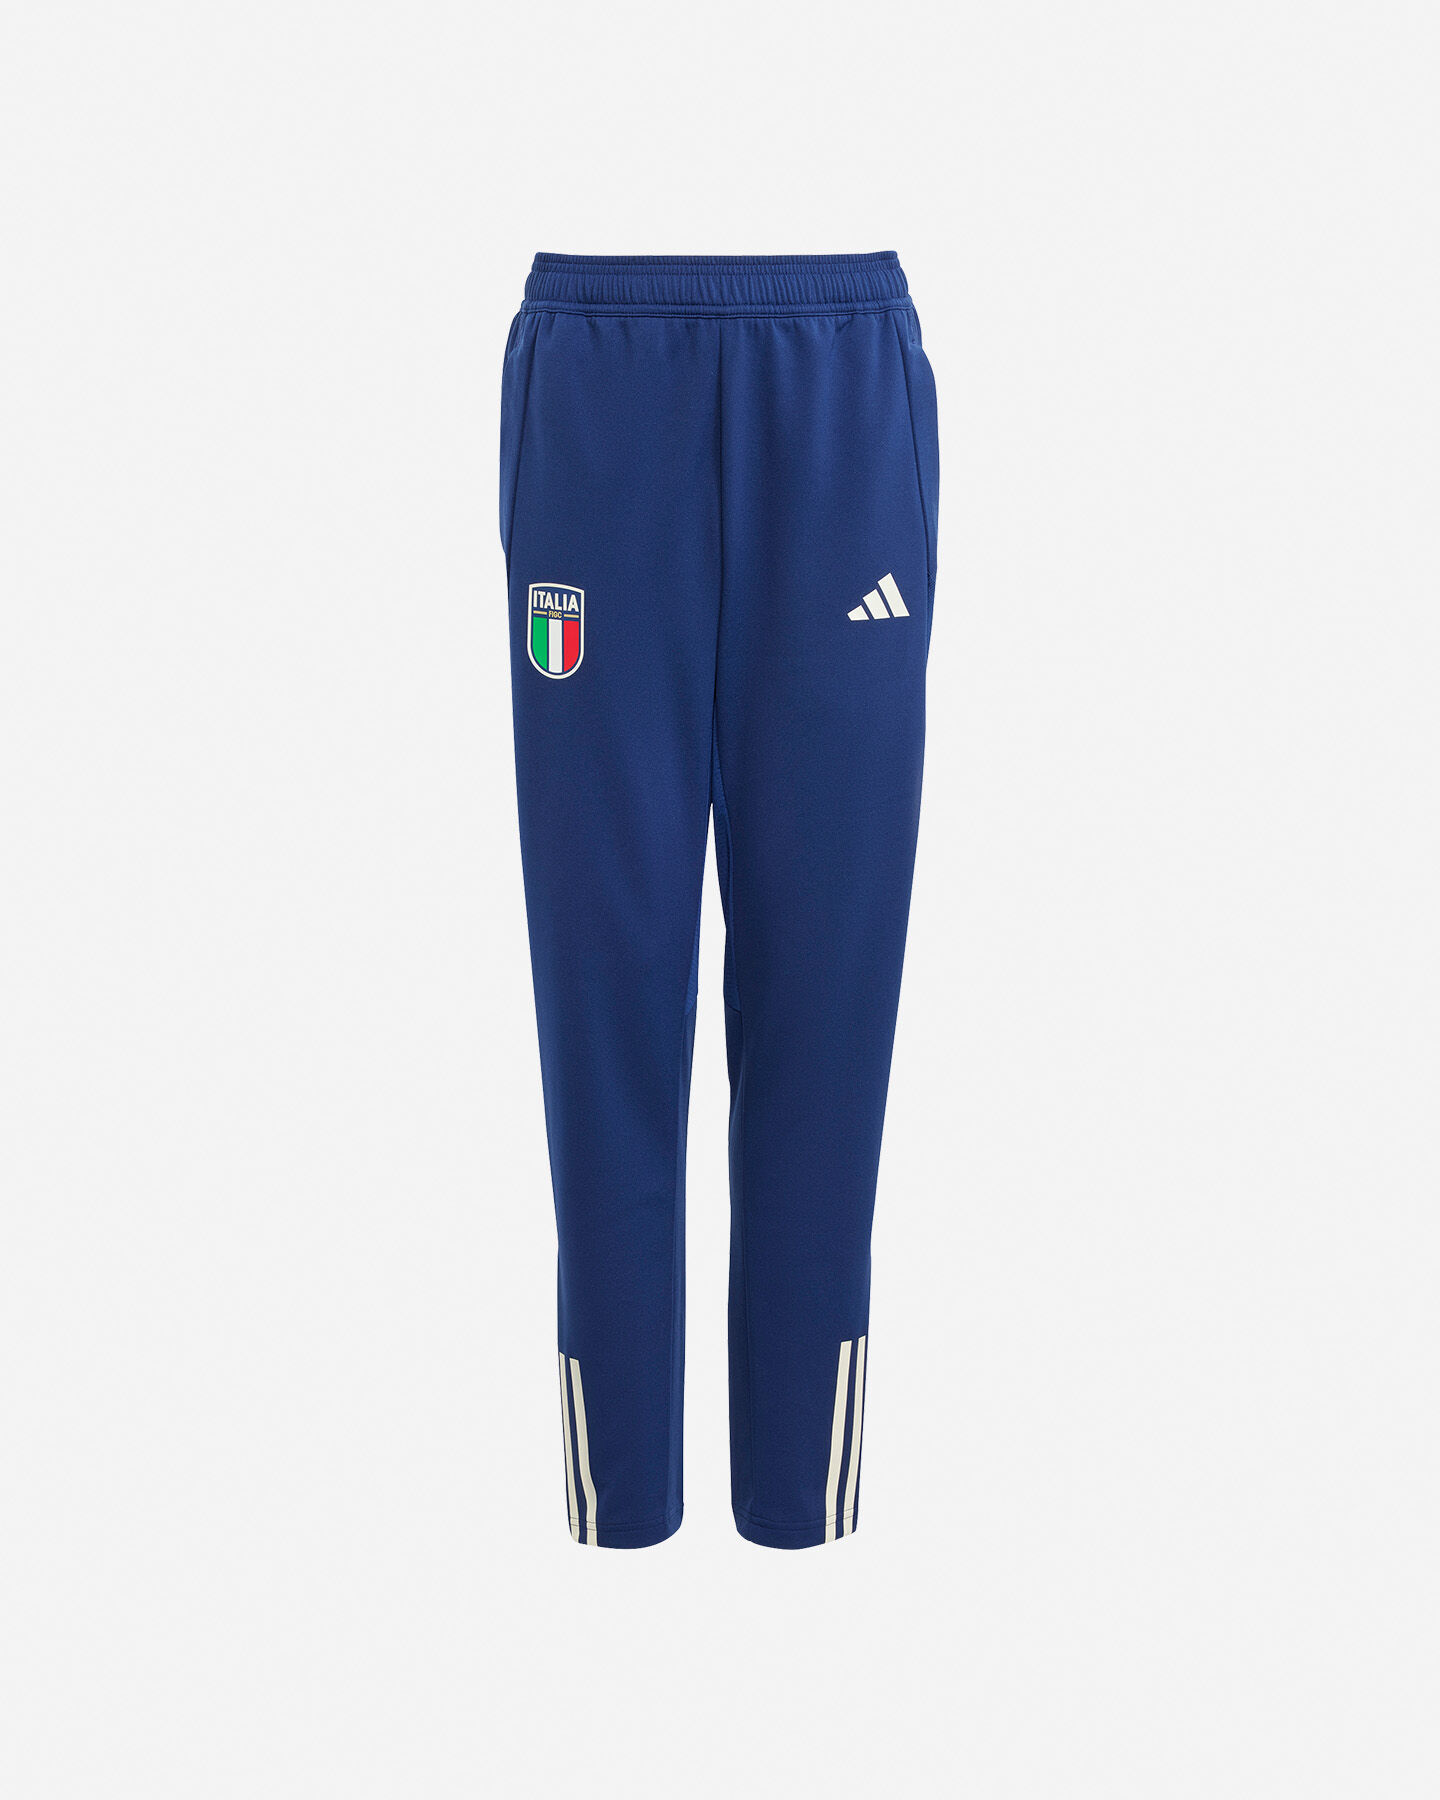  Abbigliamento calcio ADIDAS ITALIA TRAINING JR S5542901|UNI|7-8A scatto 0